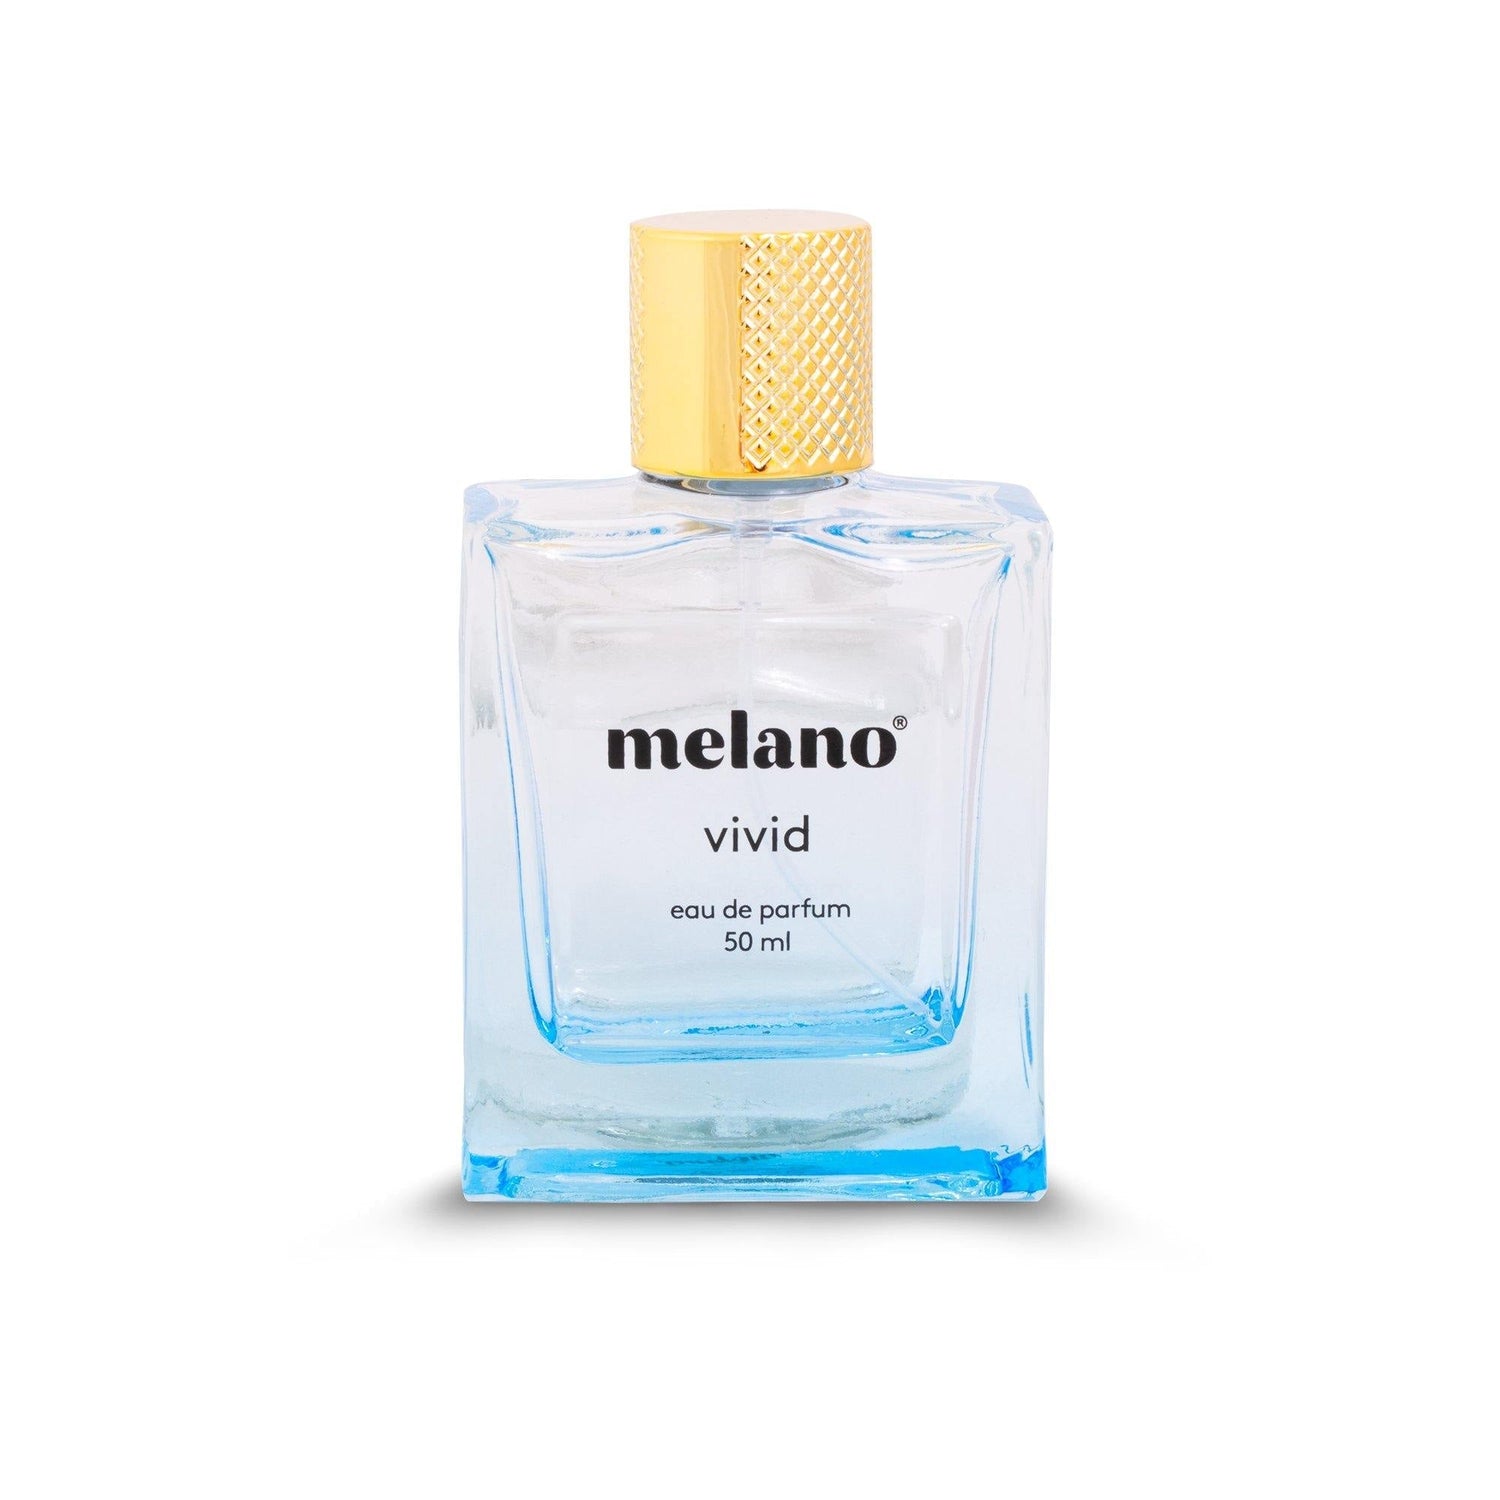 Melano Vivid Parfum - melanojewelry